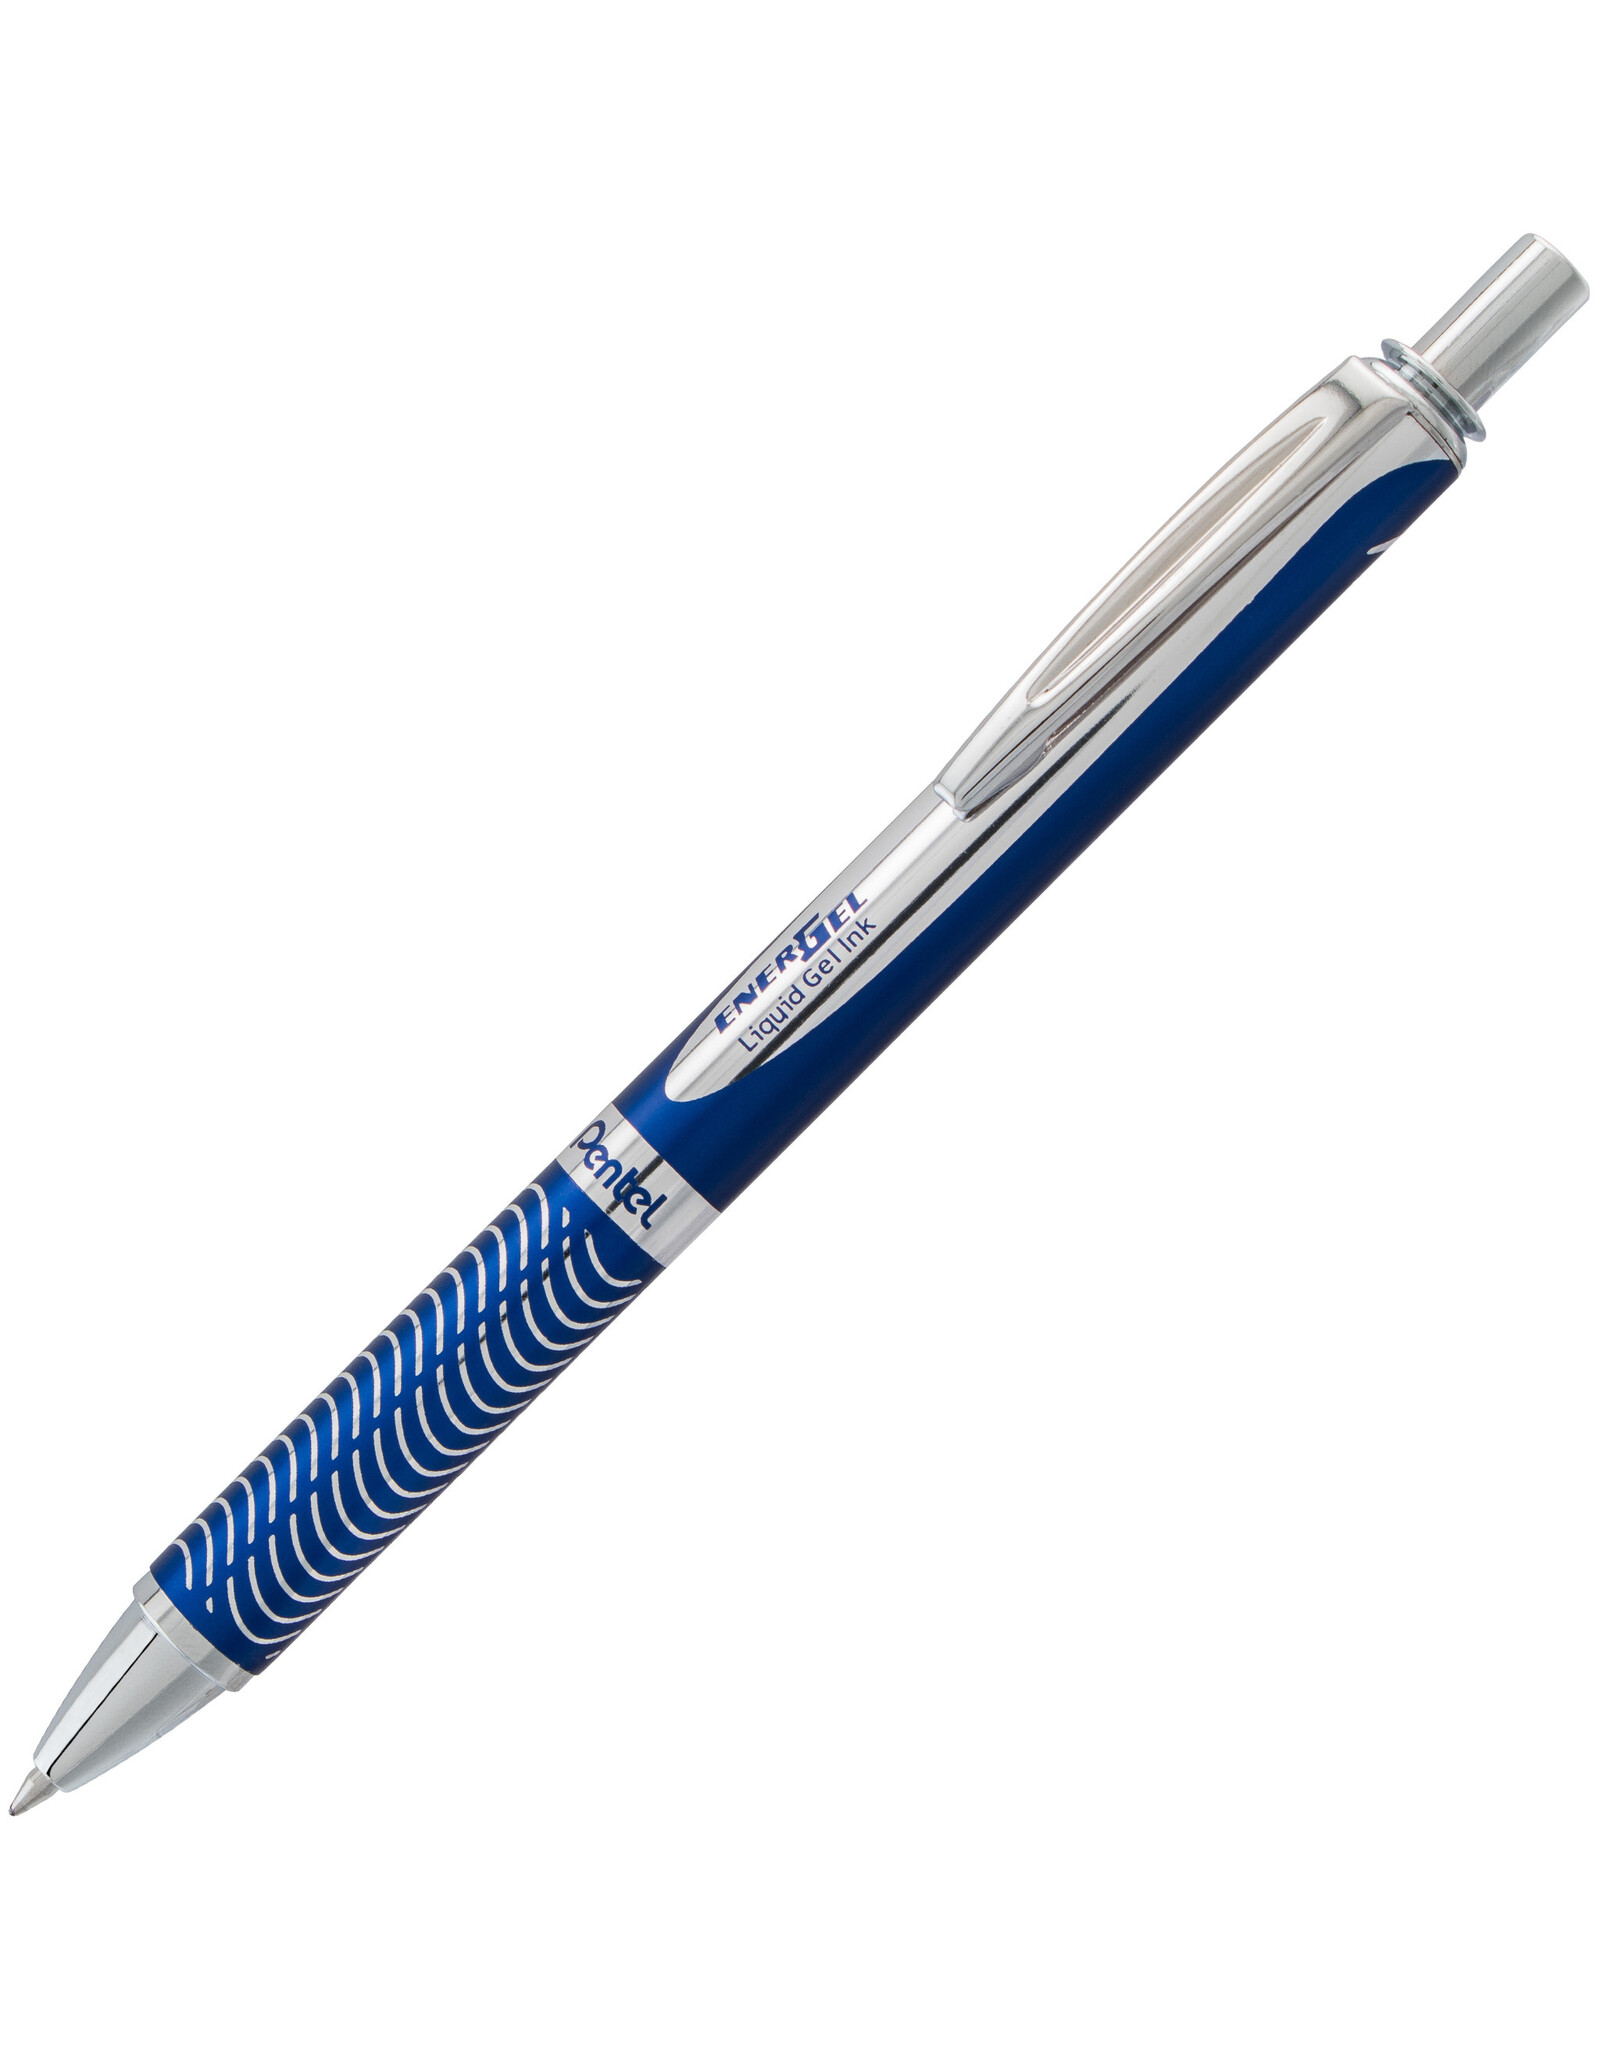 Pentel Pentel EnerGel Alloy Gel Pen, Blue, 0.7mm